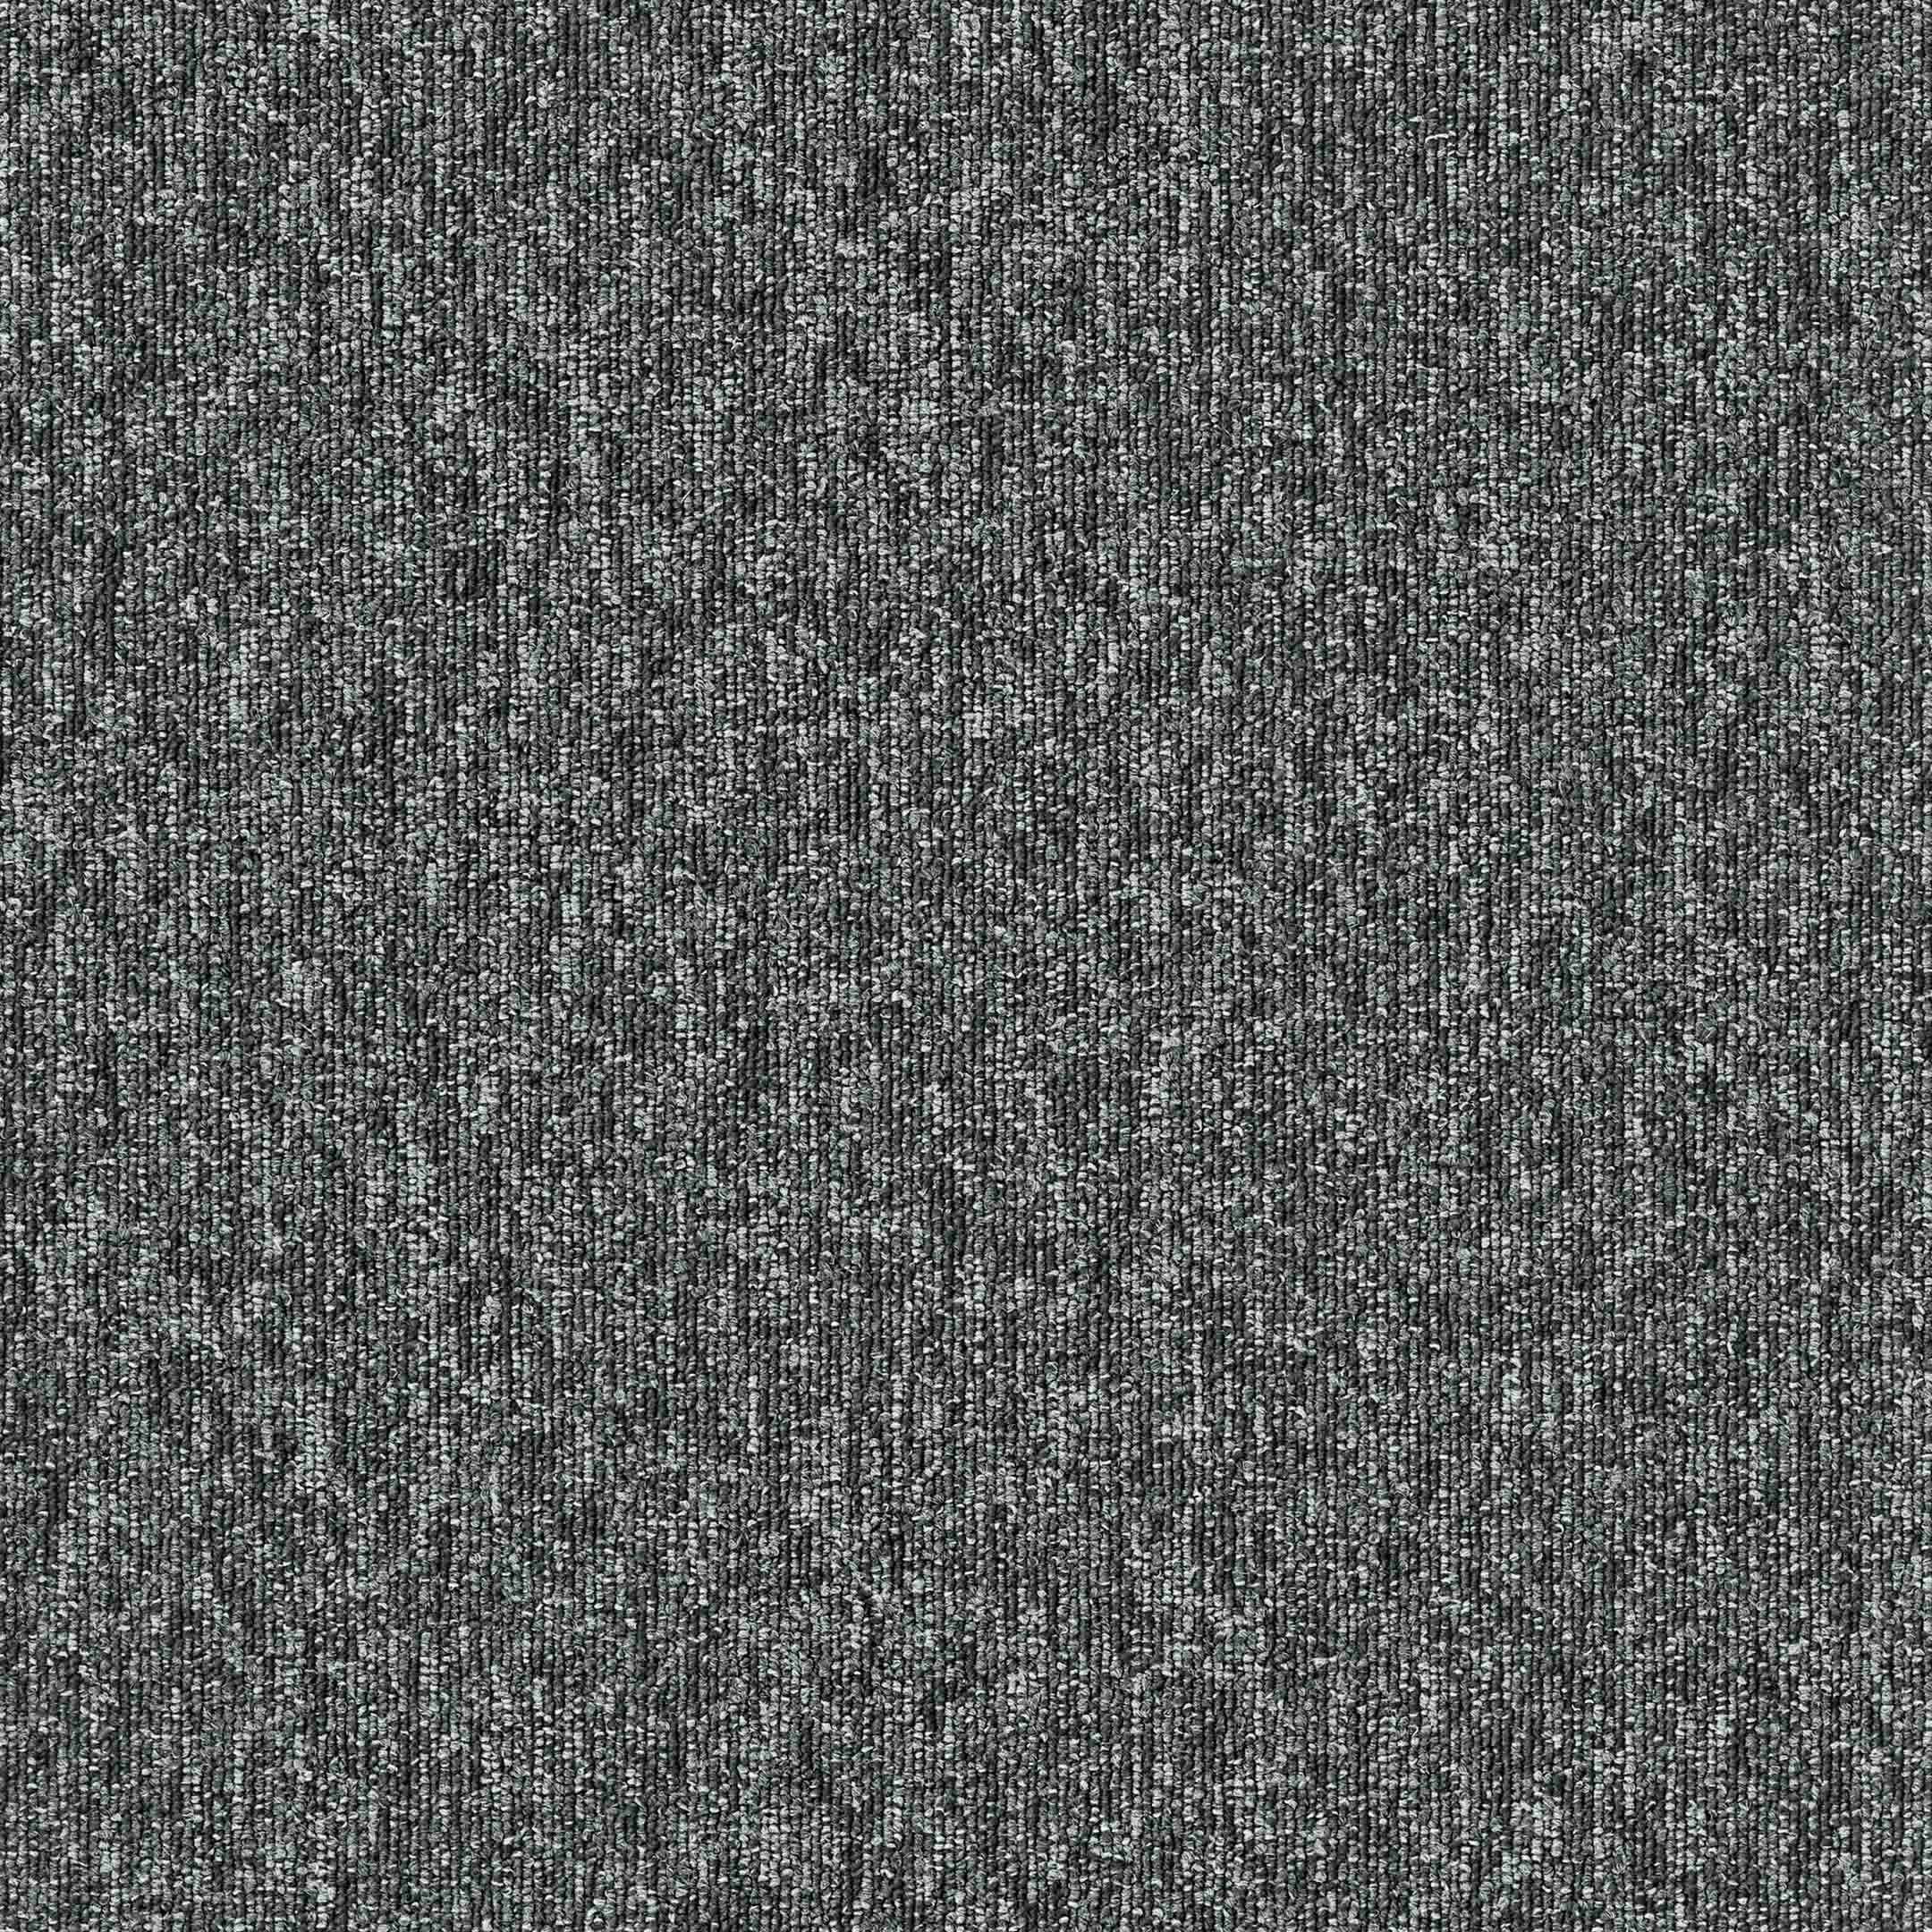 фото Ковровая плитка tarkett sky orig pvc 346-86 темно-серый 5 кв.м 0,5х0,5 м